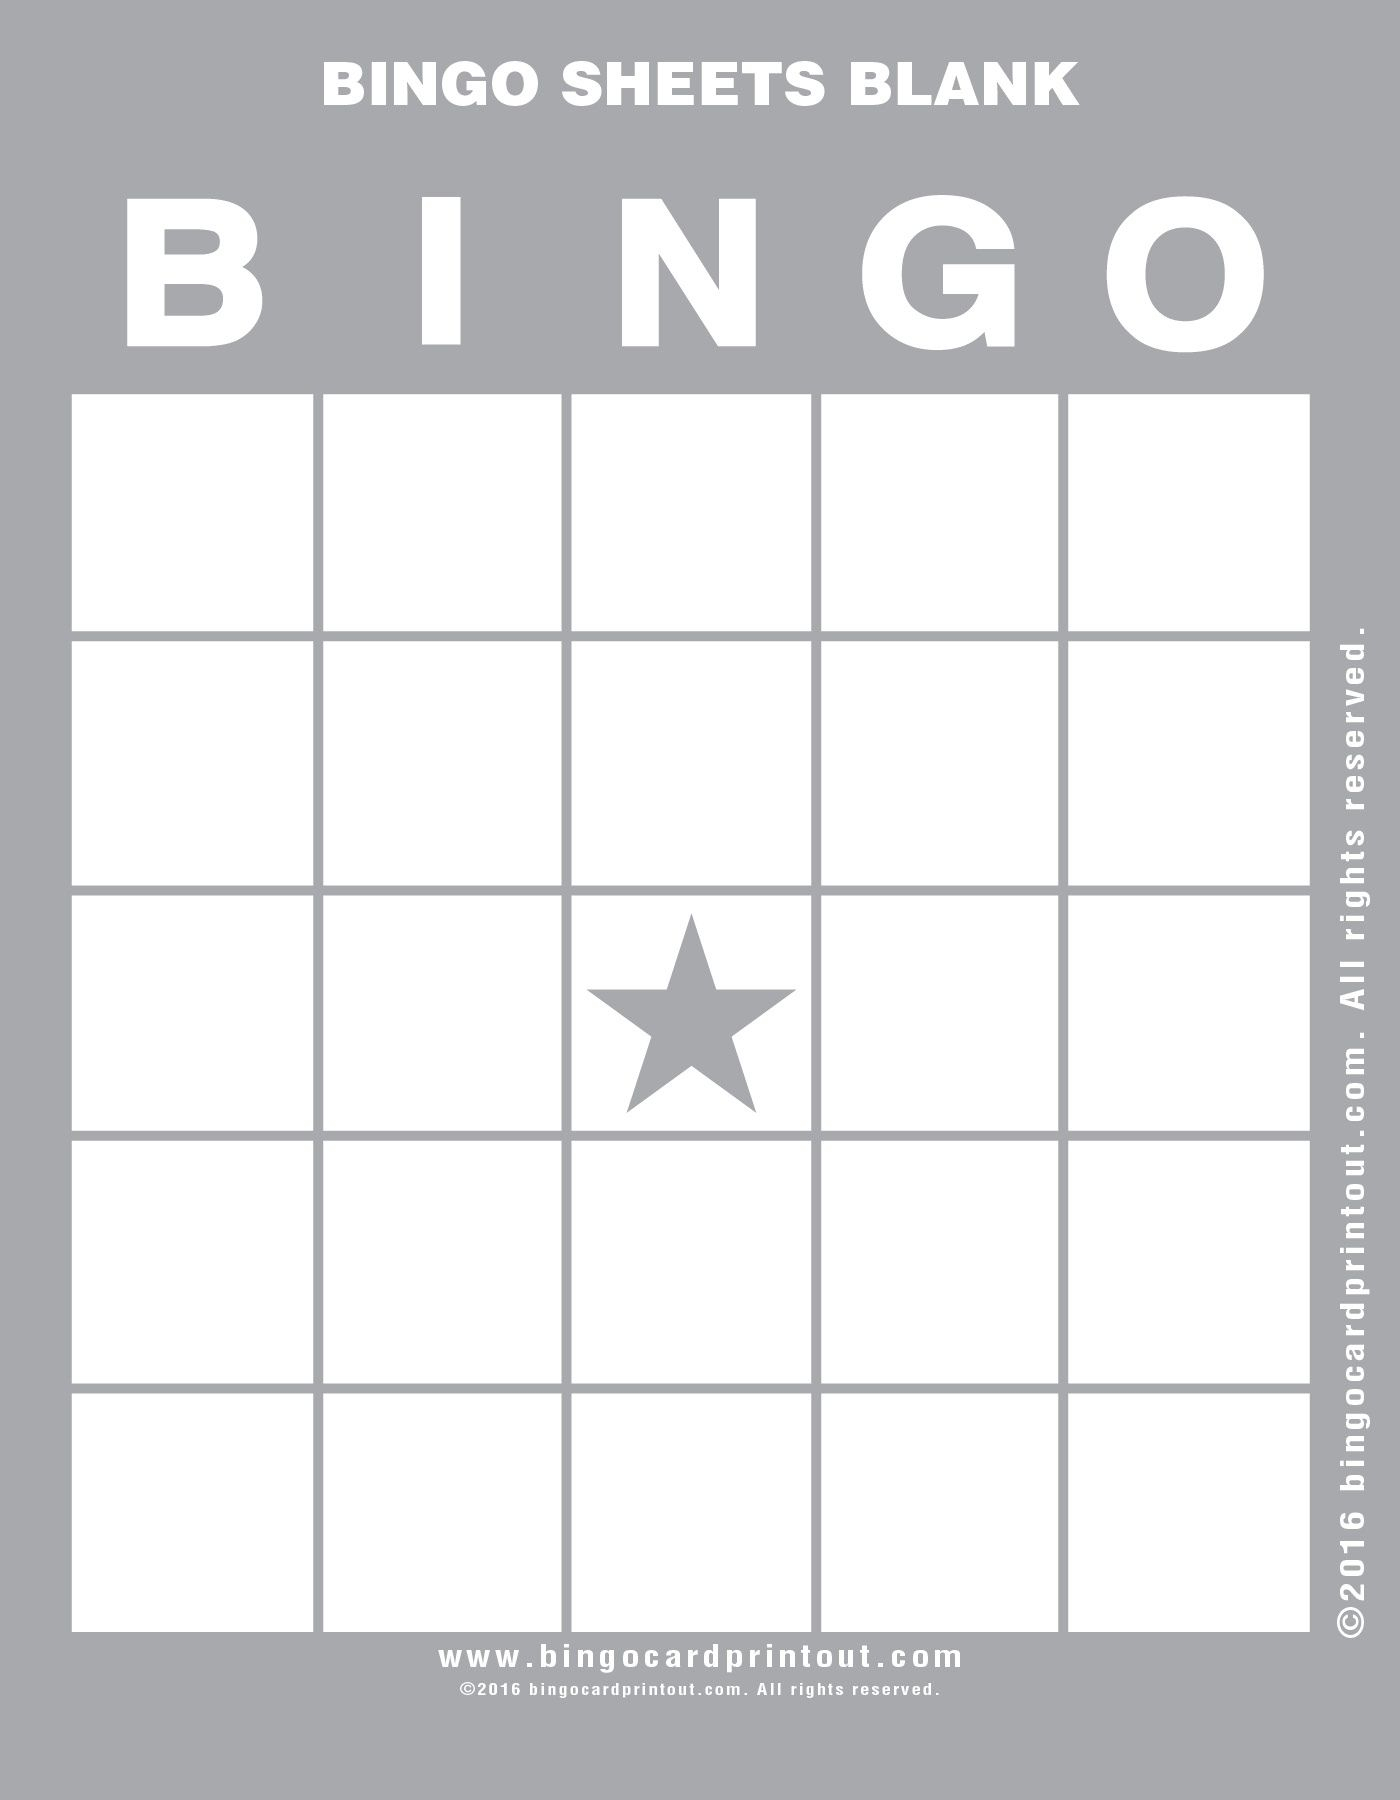 Bingo Sheets Blank 9 | Bingo Sheets Blank In 2019 | Bingo With Regard To Blank Bingo Template Pdf